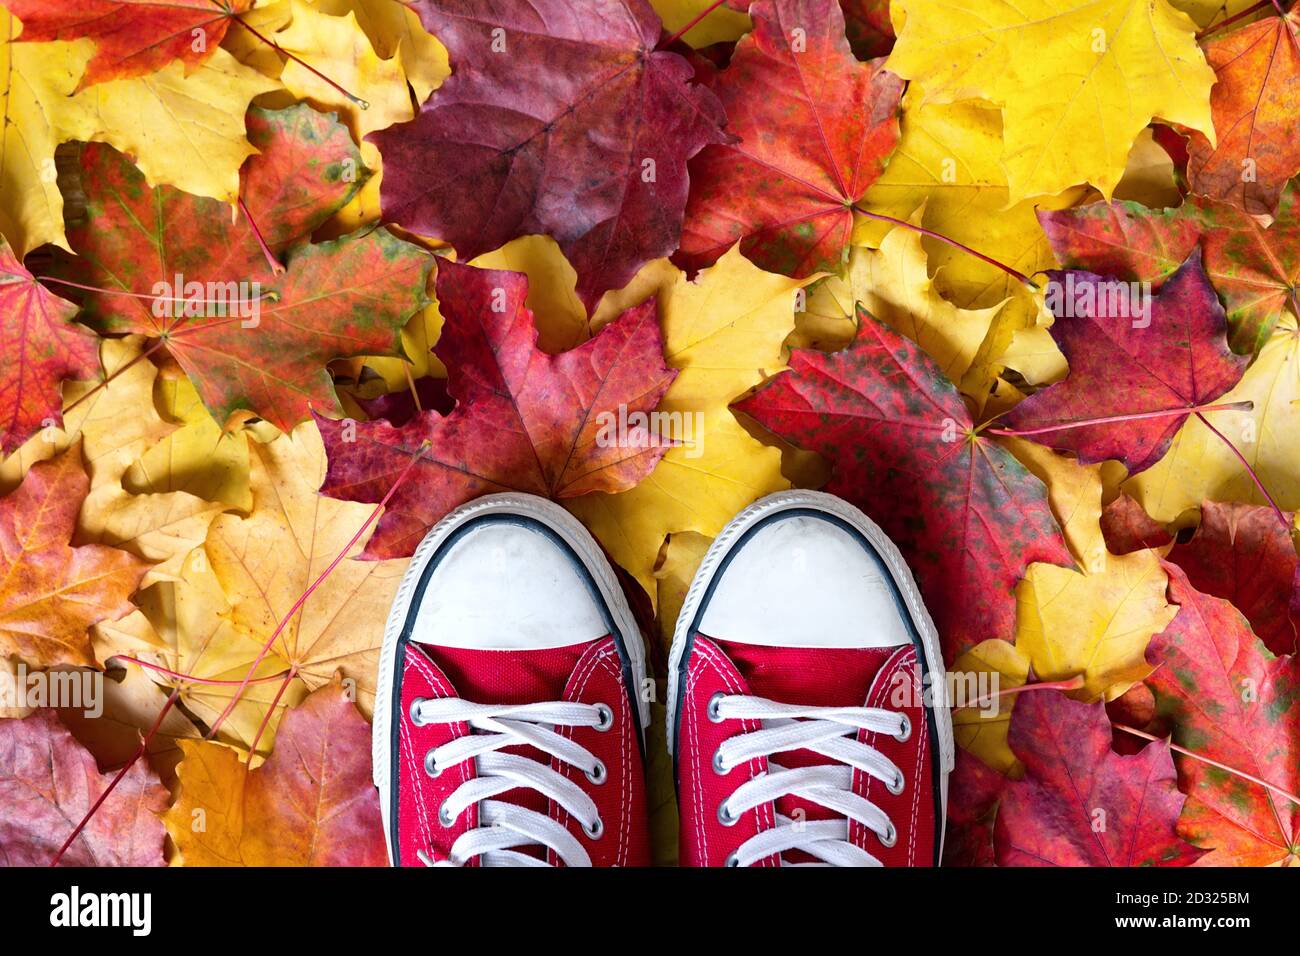 Zapatillas de lona rojas sobre un fondo amarillo otoñal. Temporada de otoño en rojo shipster zapatos, copiar espacio. Foto de stock